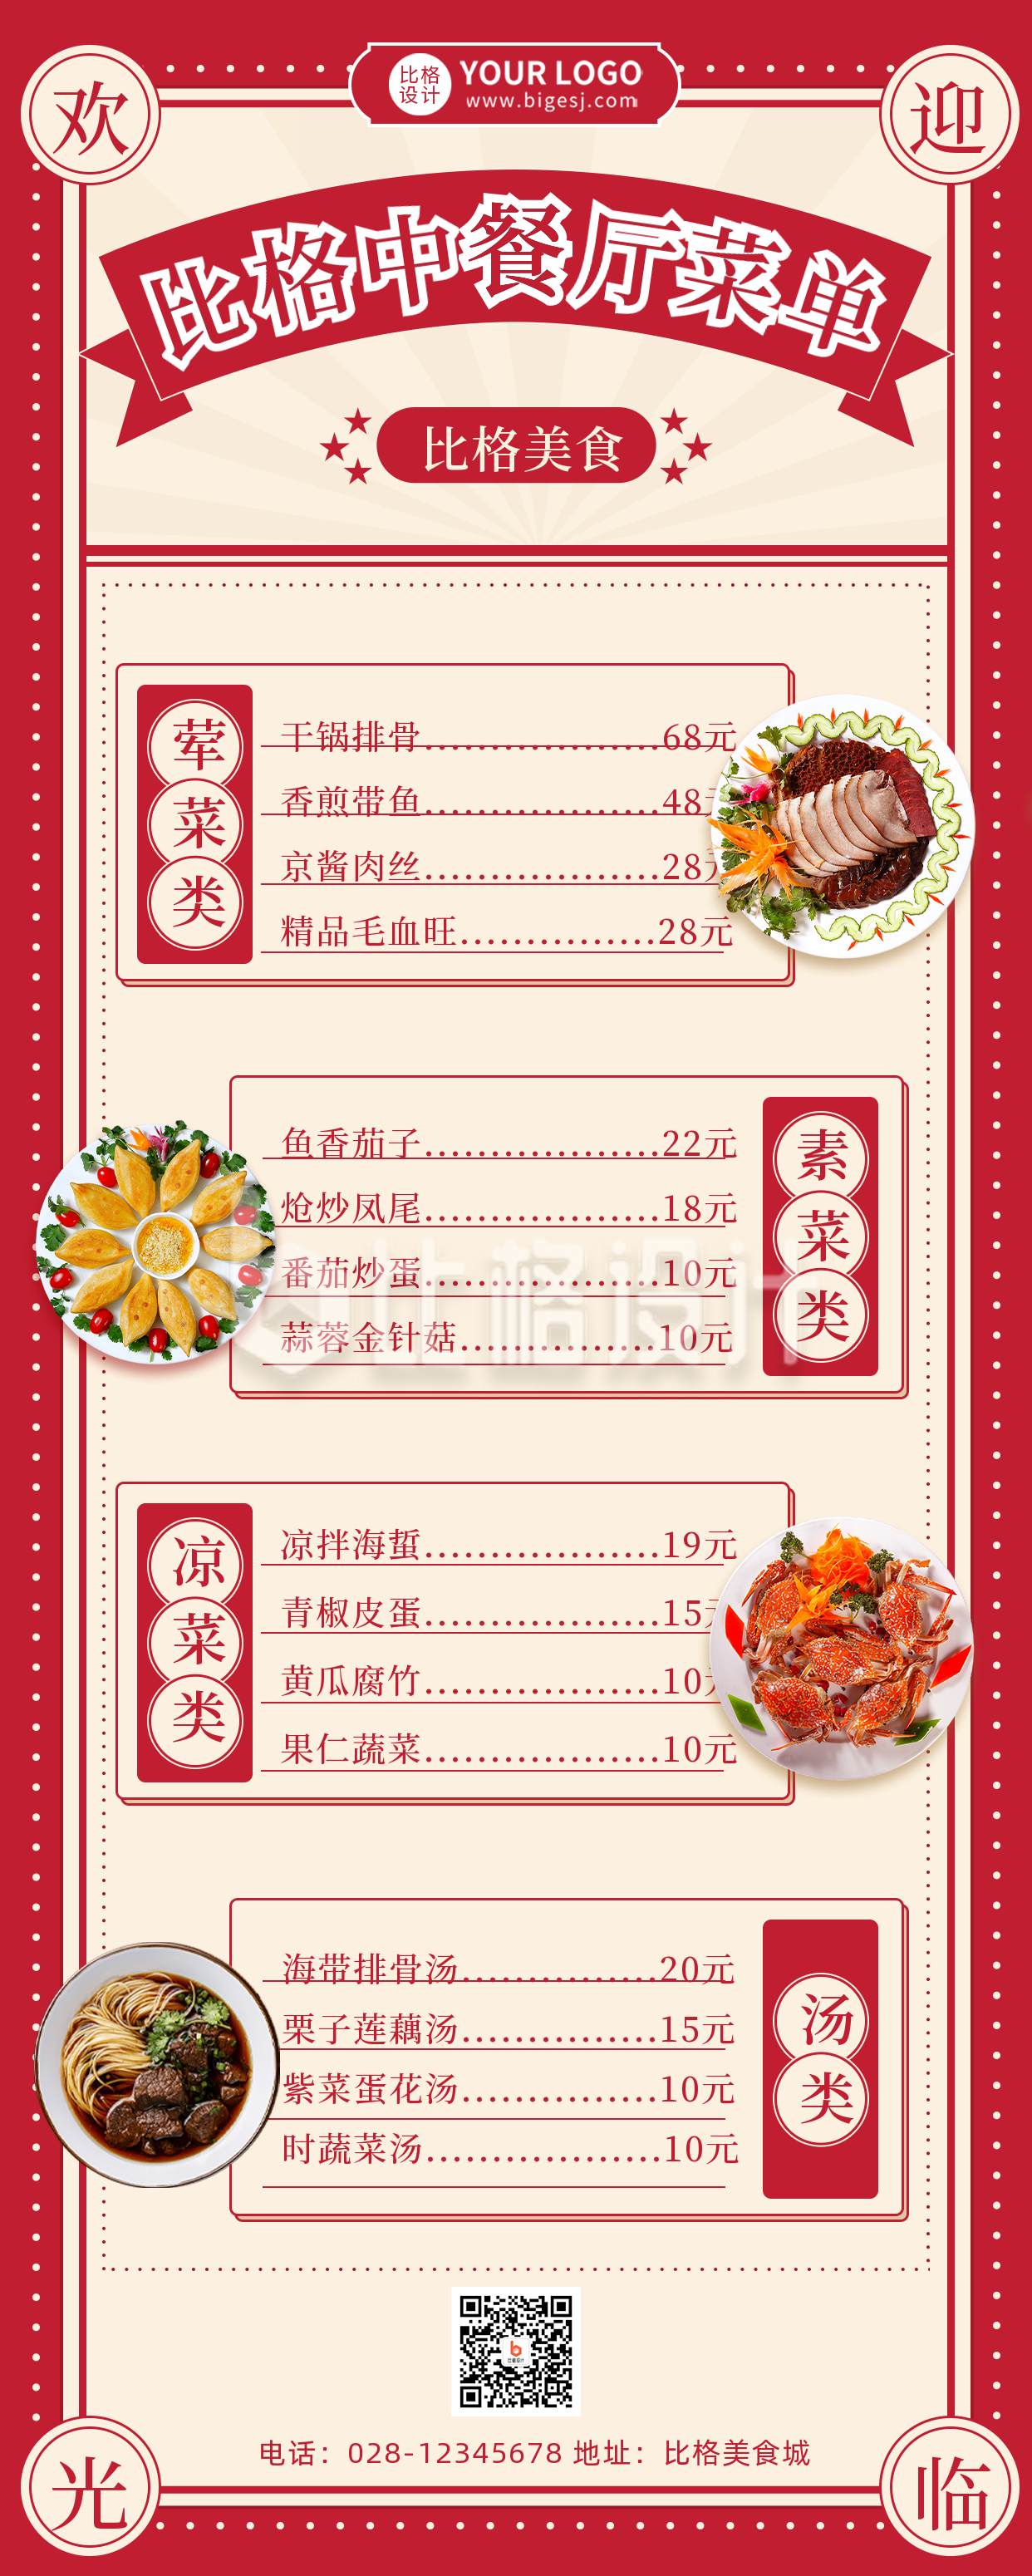 红色复古风中餐馆宣传推广长图海报